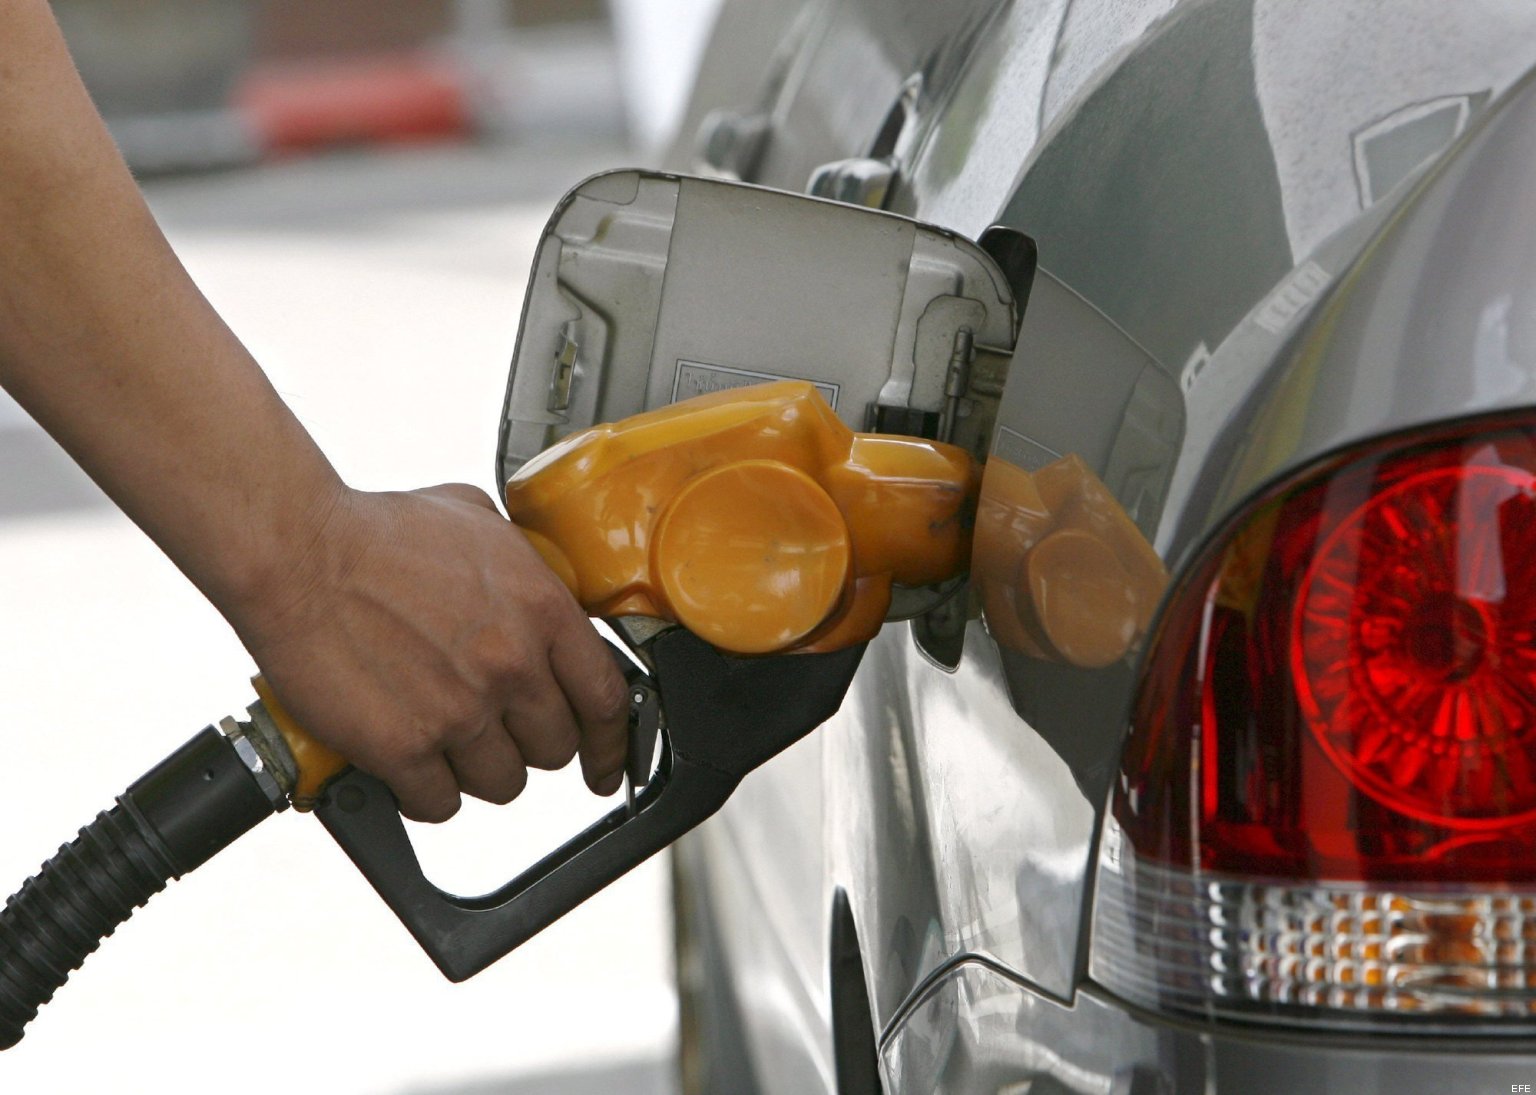 Recope solicita nuevo aumento de hasta ¢24 por litro de gasolina